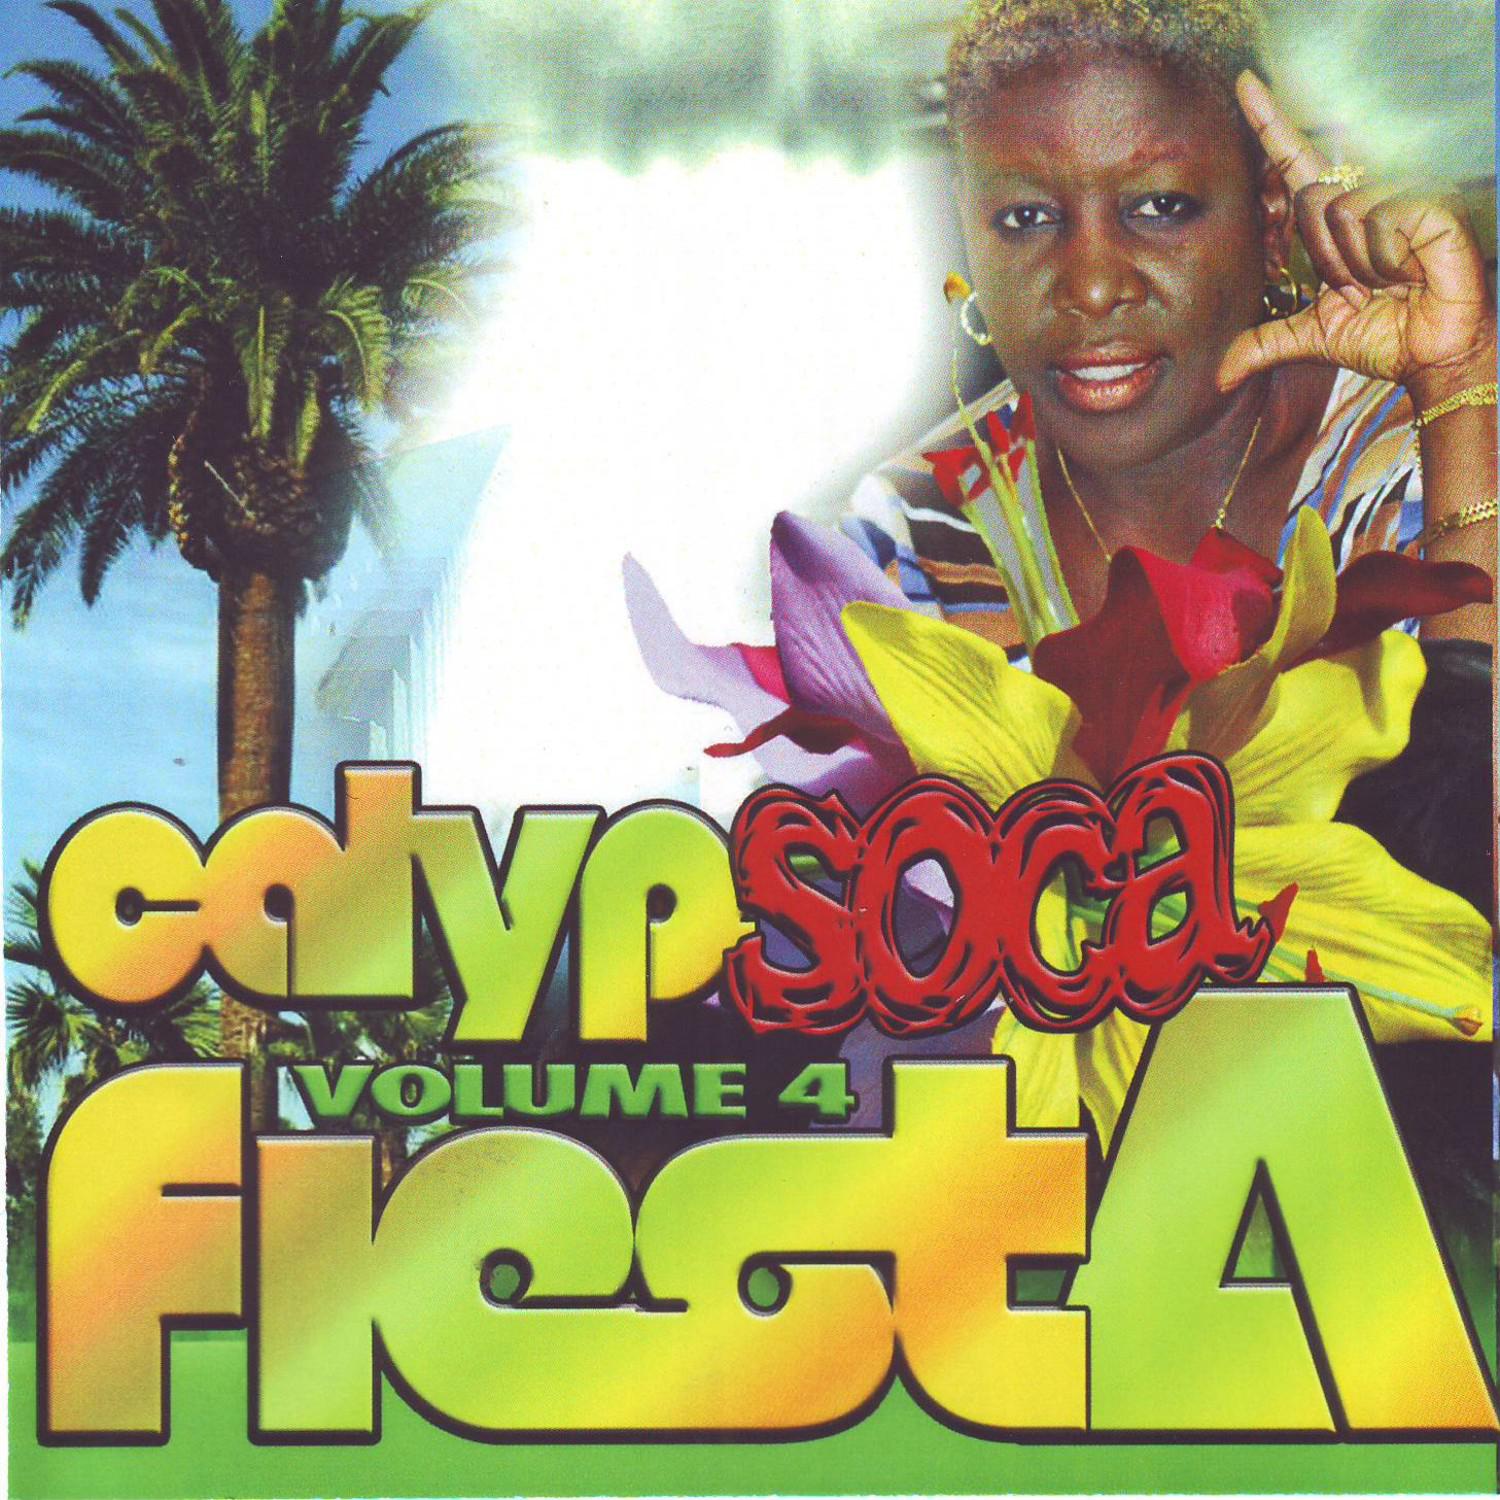 Calypsoca Fiesta Vol. 4